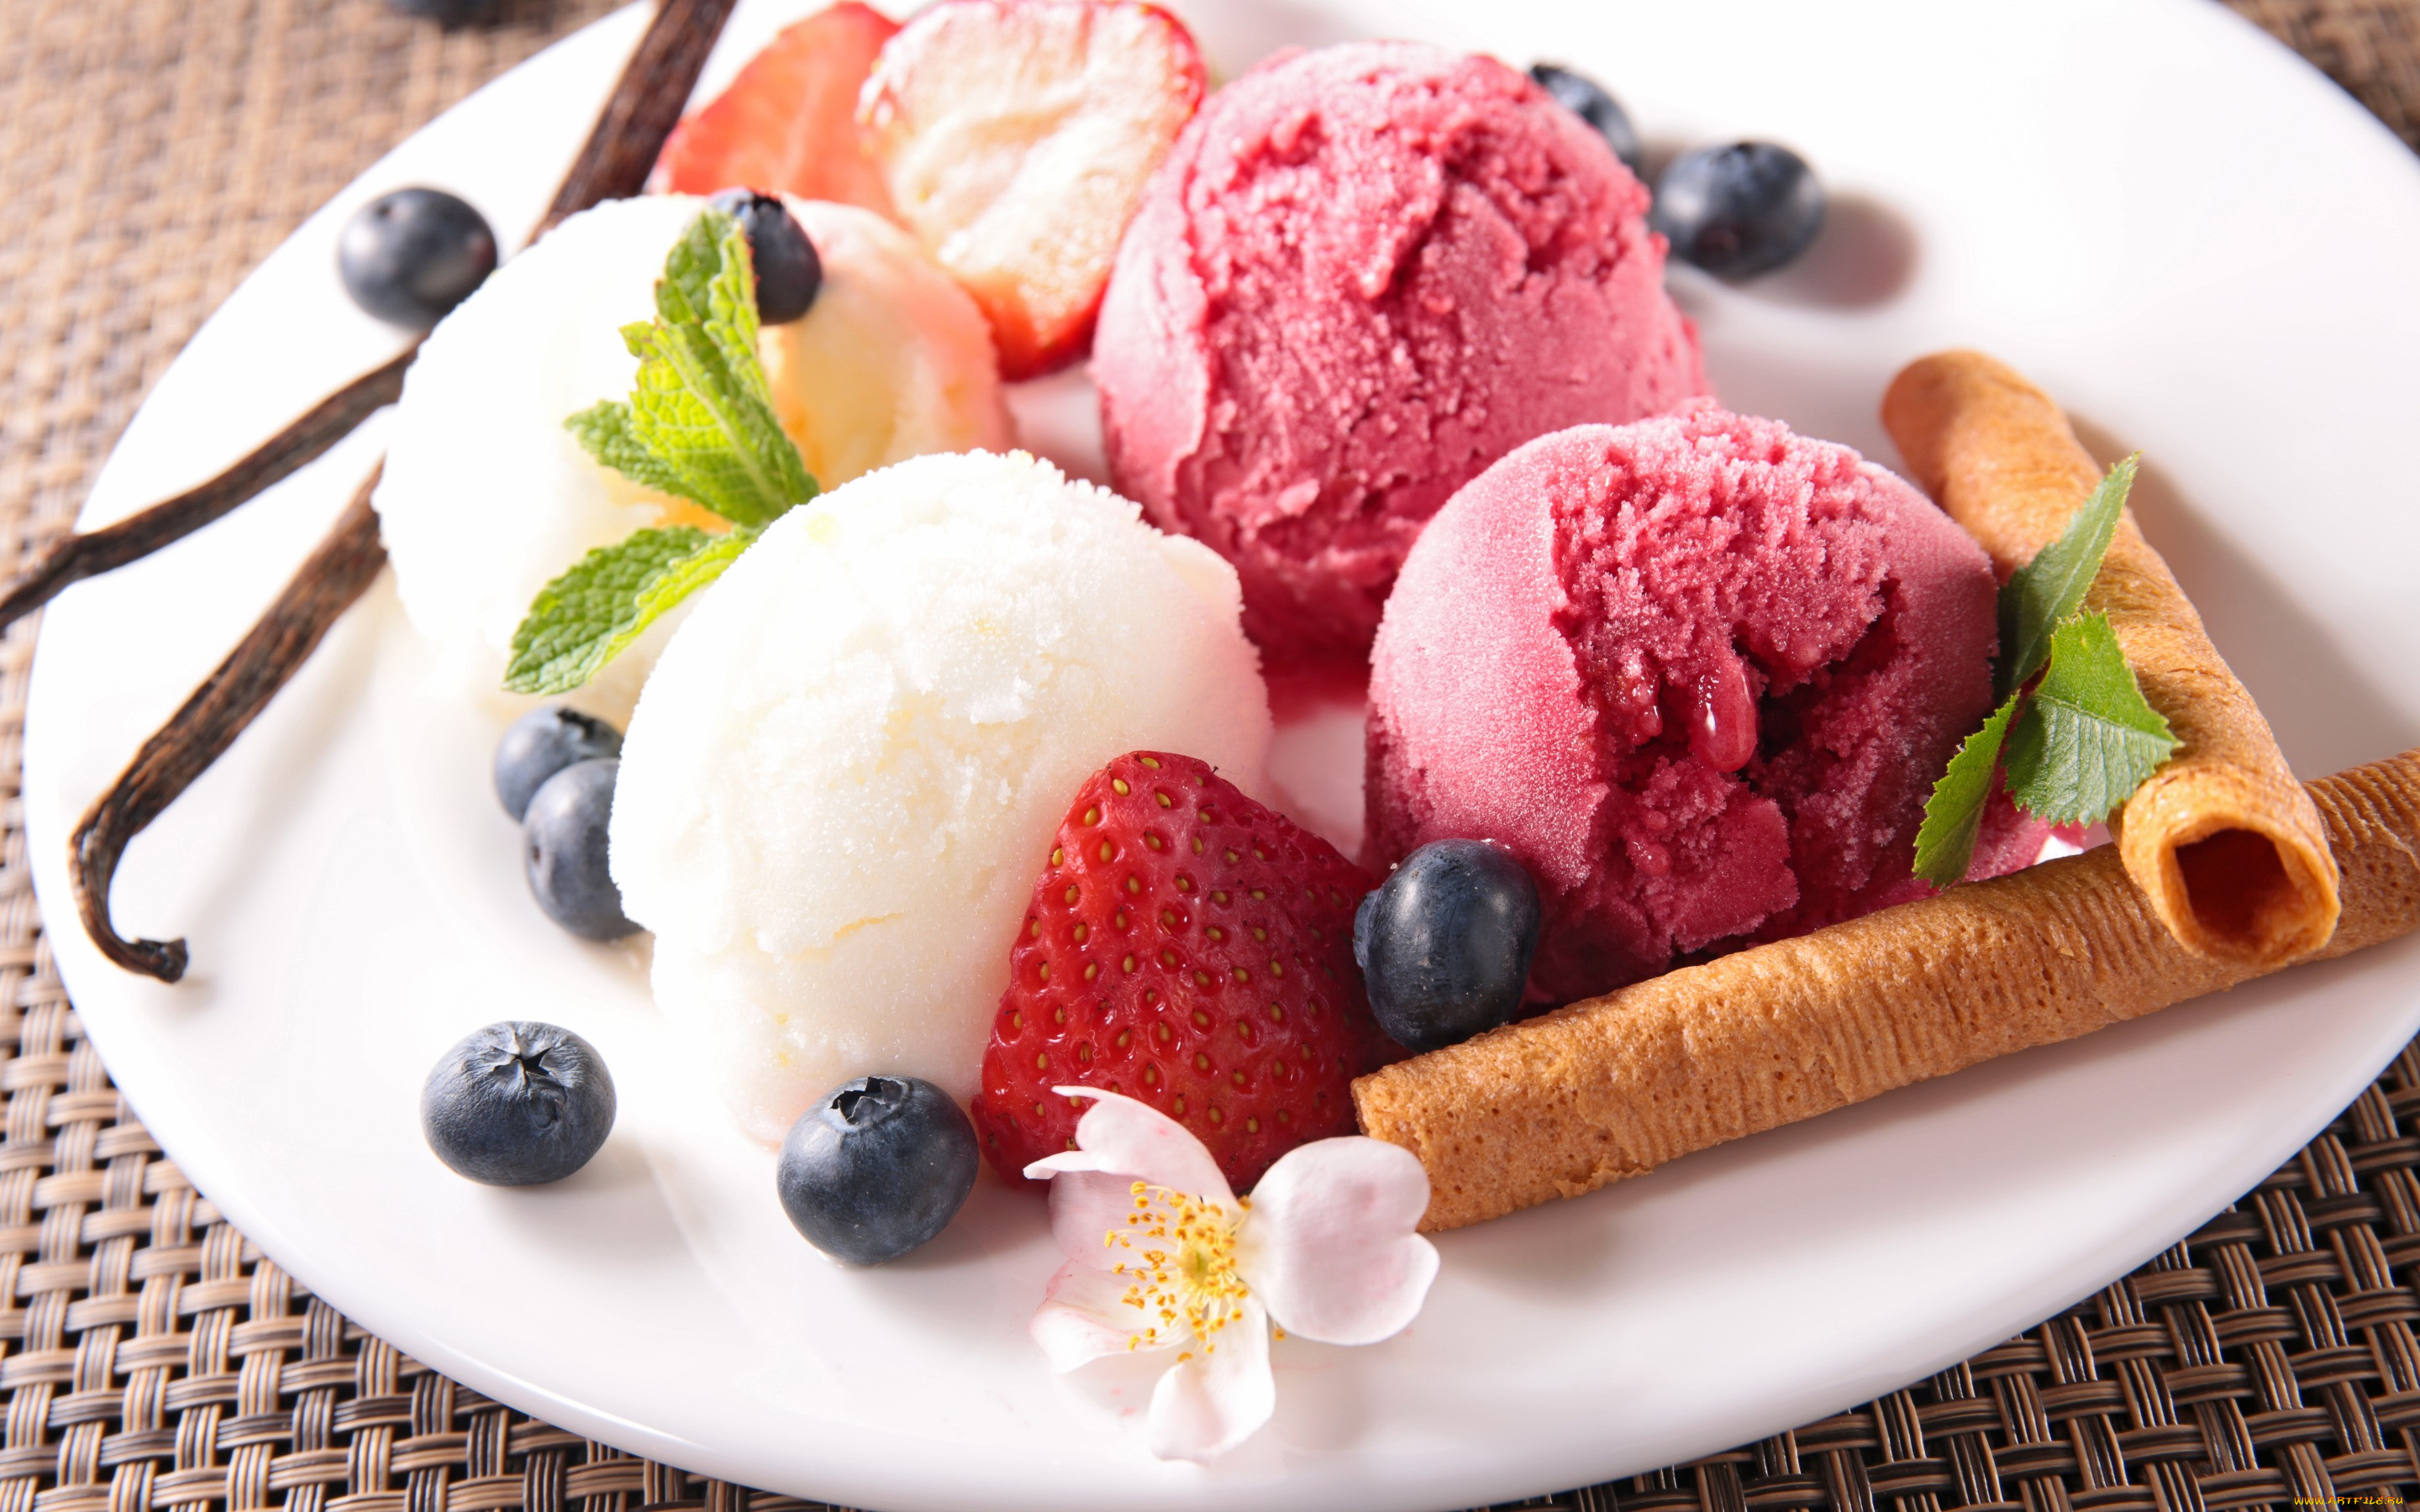 Польза и вред мороженого: как выбрать десерт в магазине и приготовить дома, сколько в нем калорий, в каких ситуациях мороженое оздоравливает, а когда от него лучше отказаться